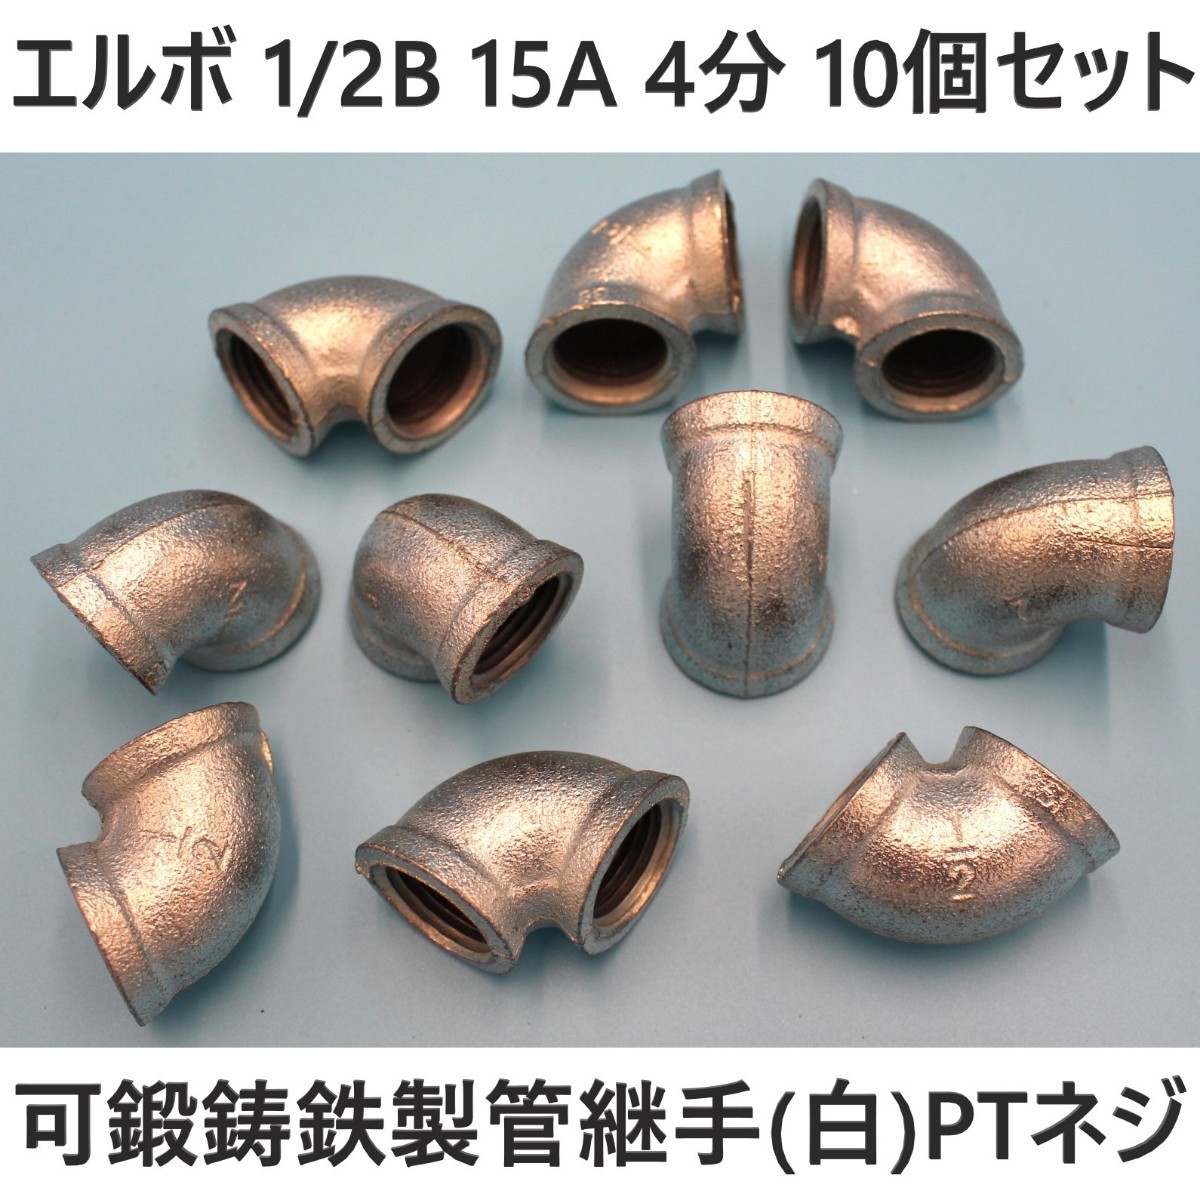 エルボ 15A 1/2B 4分 10個セット 可鍛鋳鉄製管継手(白) ねじ込み配管継手